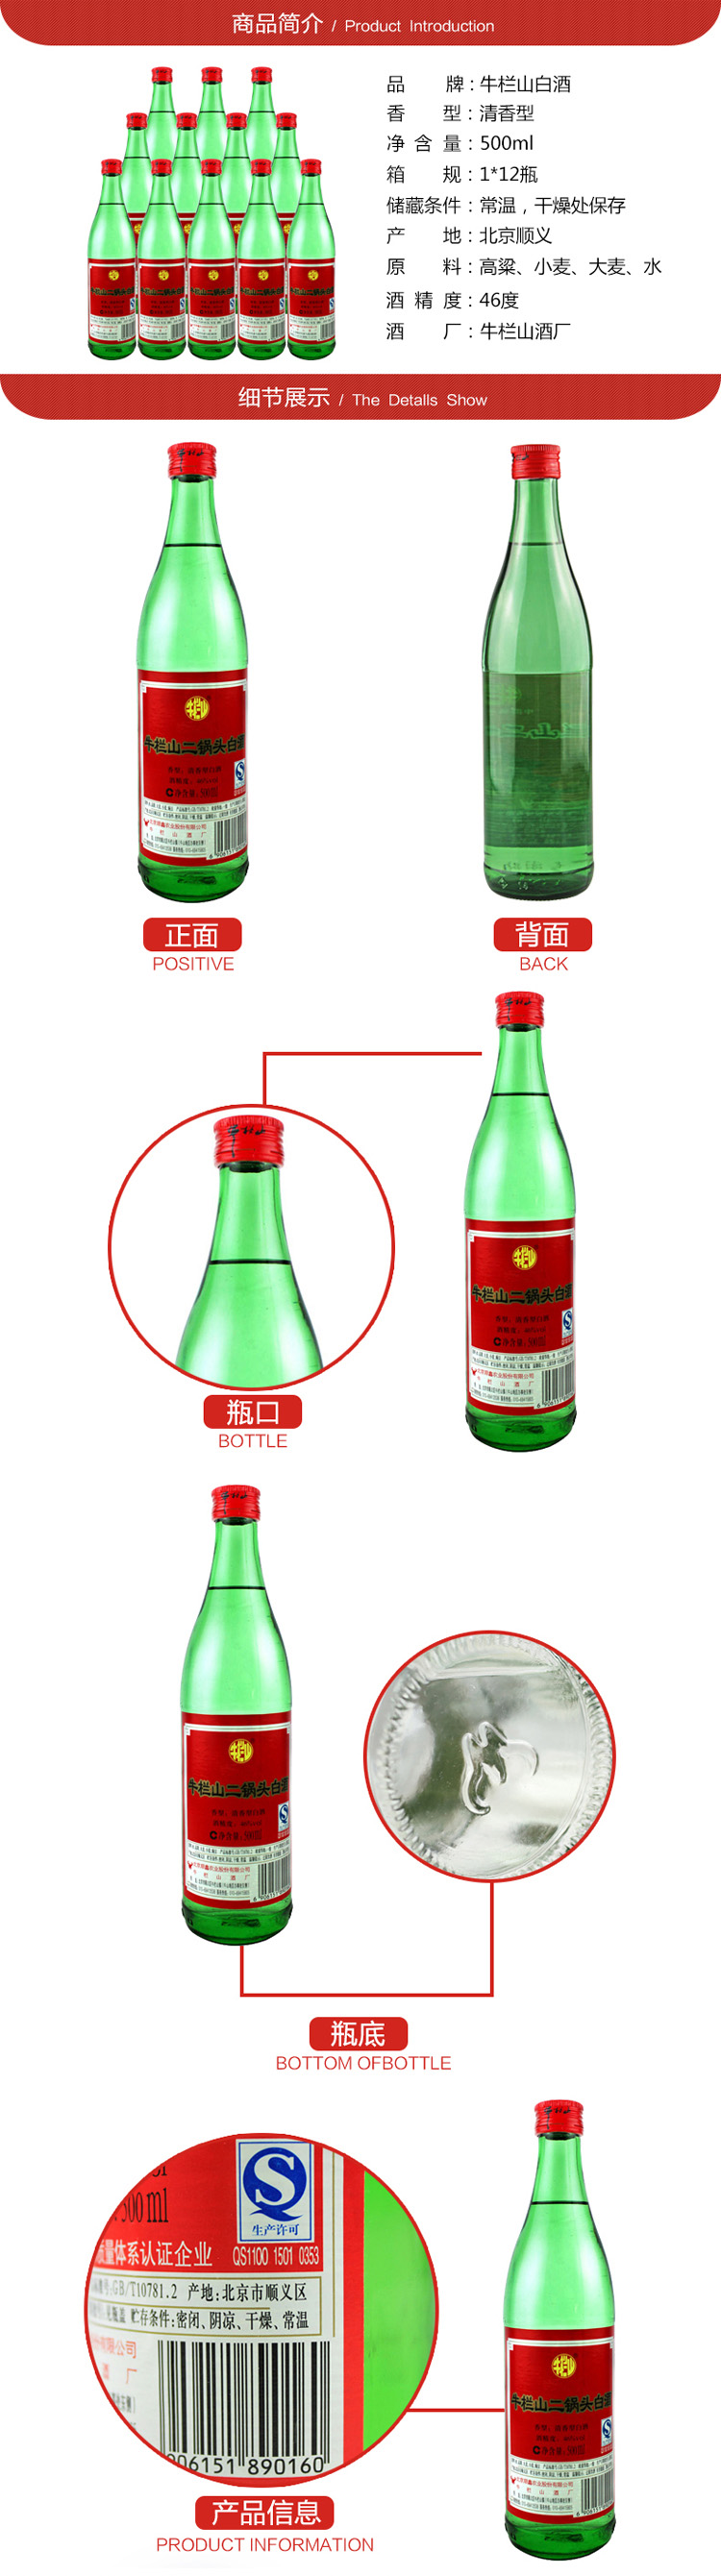 【北京馆】牛栏山46°绿瓶二锅头500ml*12